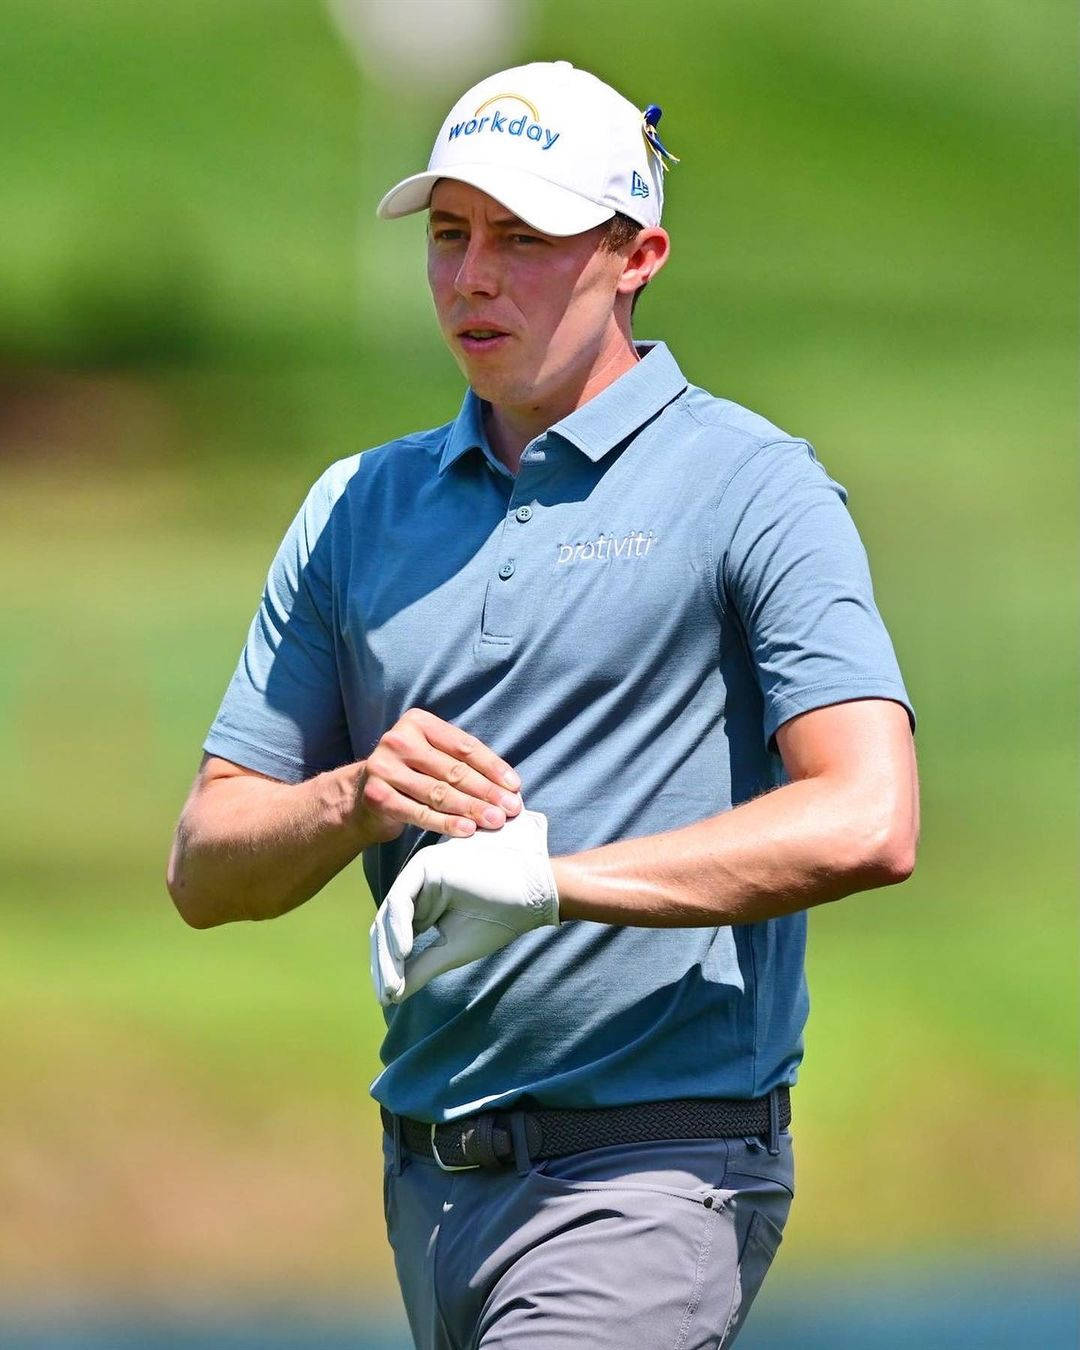 Download Matt Fitzpatrick Wearing Golf Glove Wallpaper | Wallpapers.com